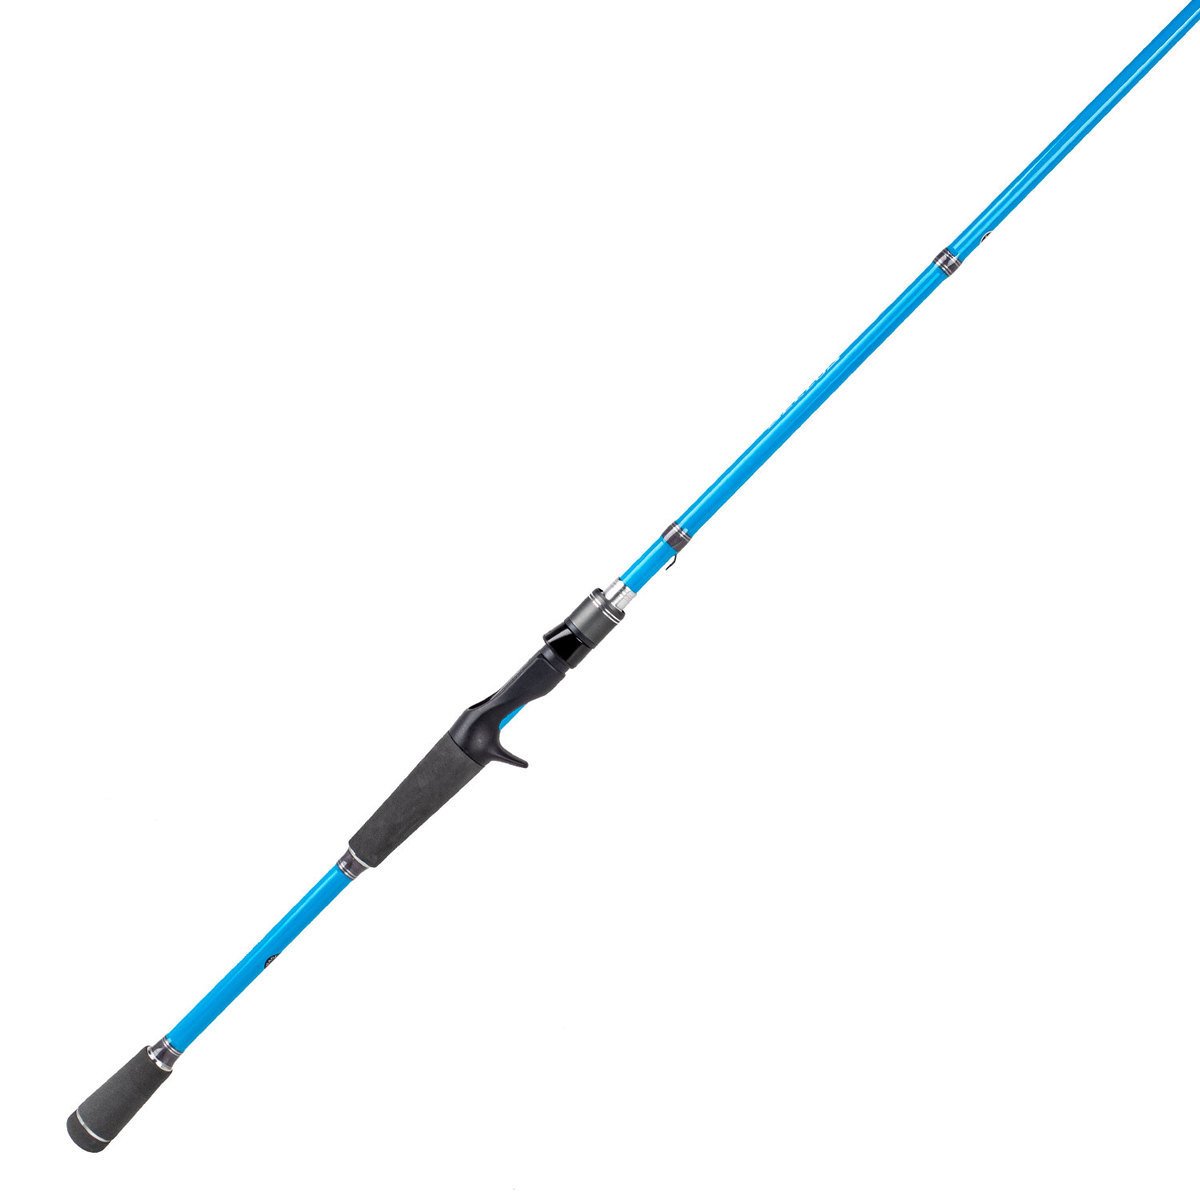 Denali Rods AttaX Bass Spinning Rod - 7ft, Medium Power, Moderate